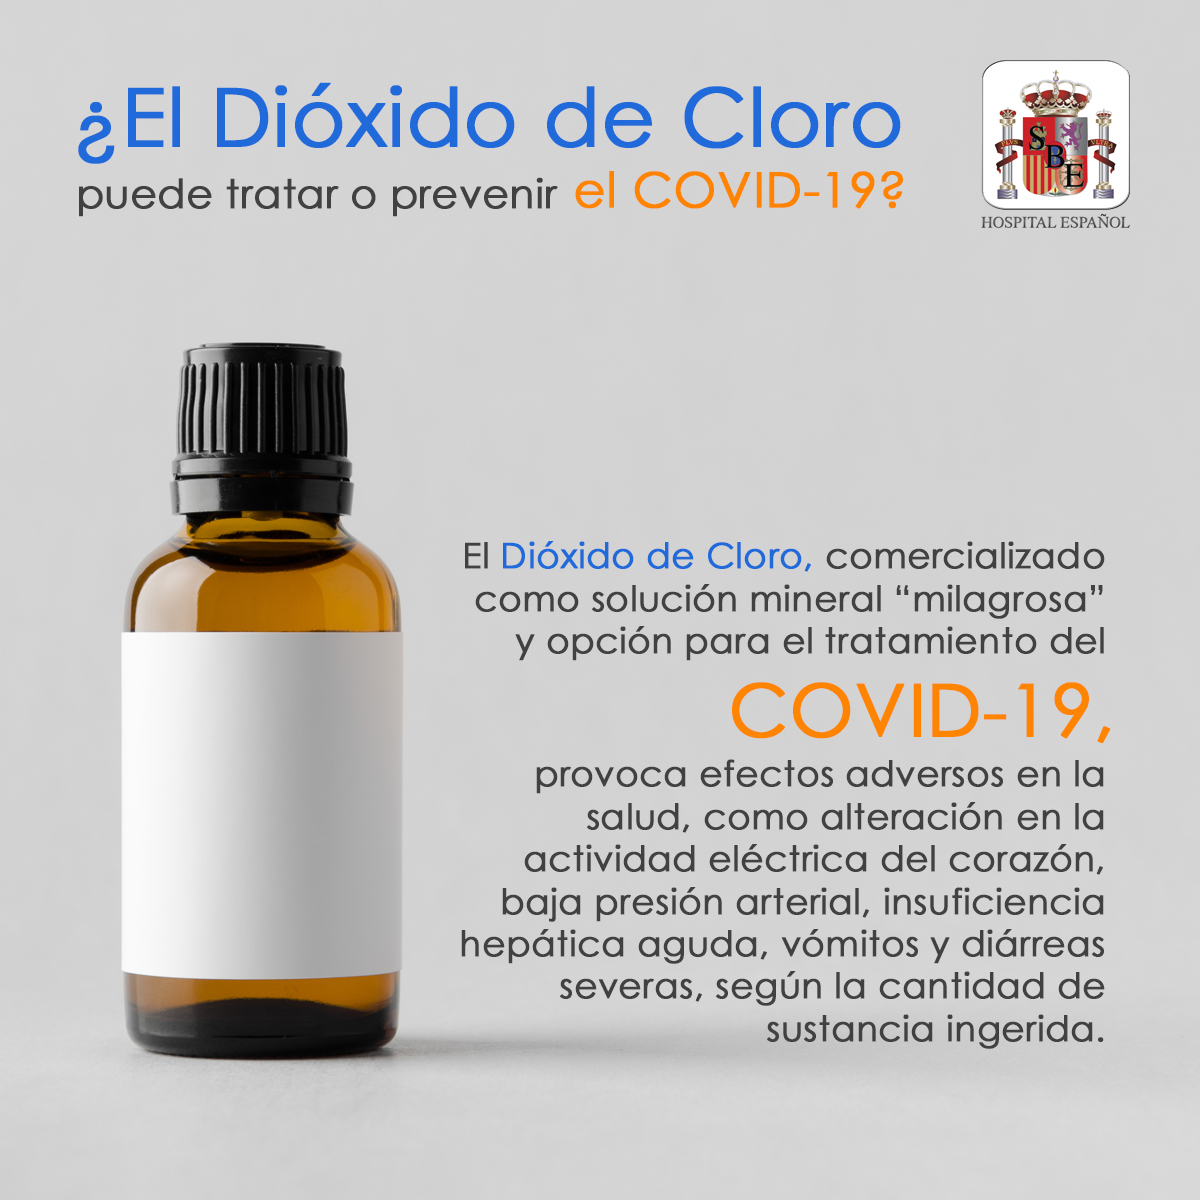 Hospital Español on X: El dióxido de cloro es un potente y tóxico